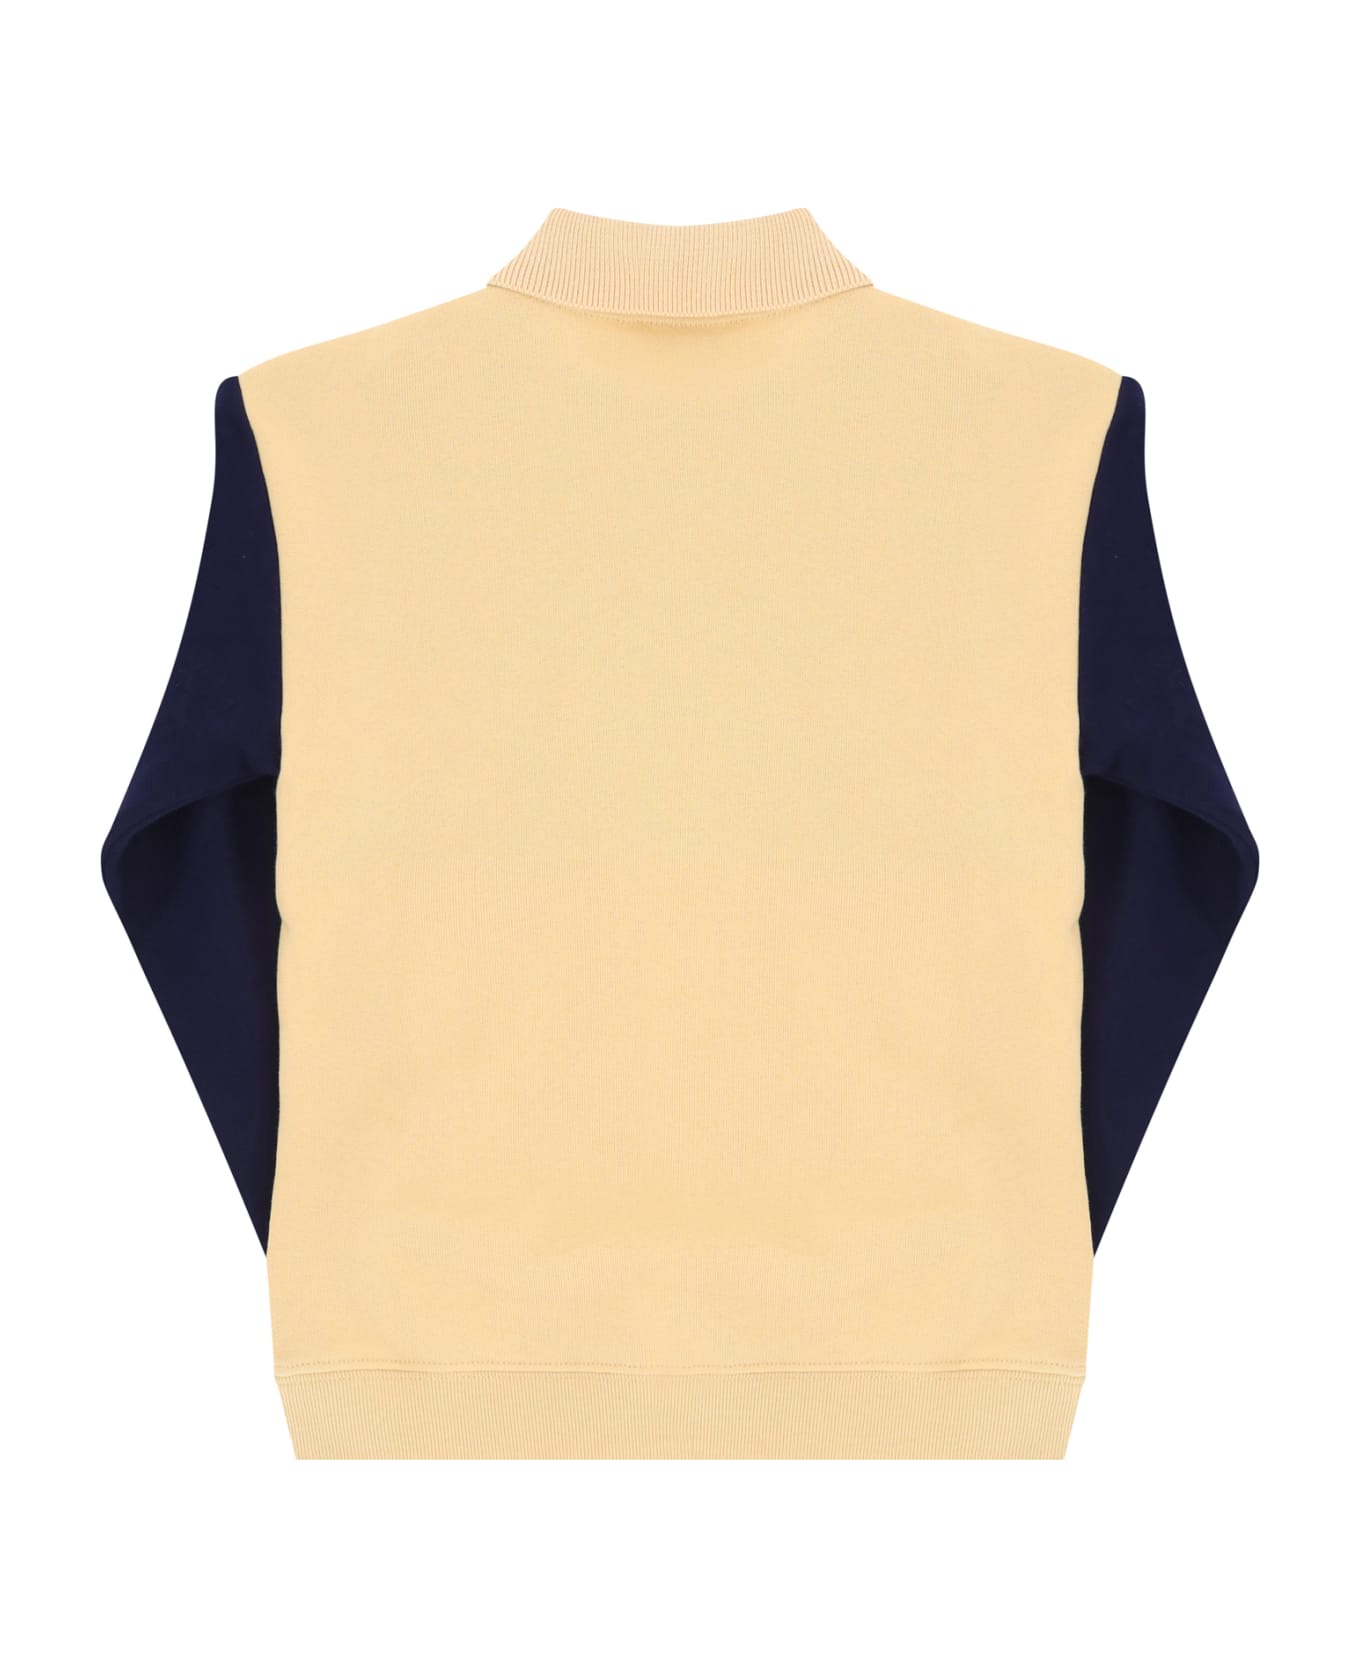 Gucci Sweatshirt For Boy - Dknightsky/bread/mix